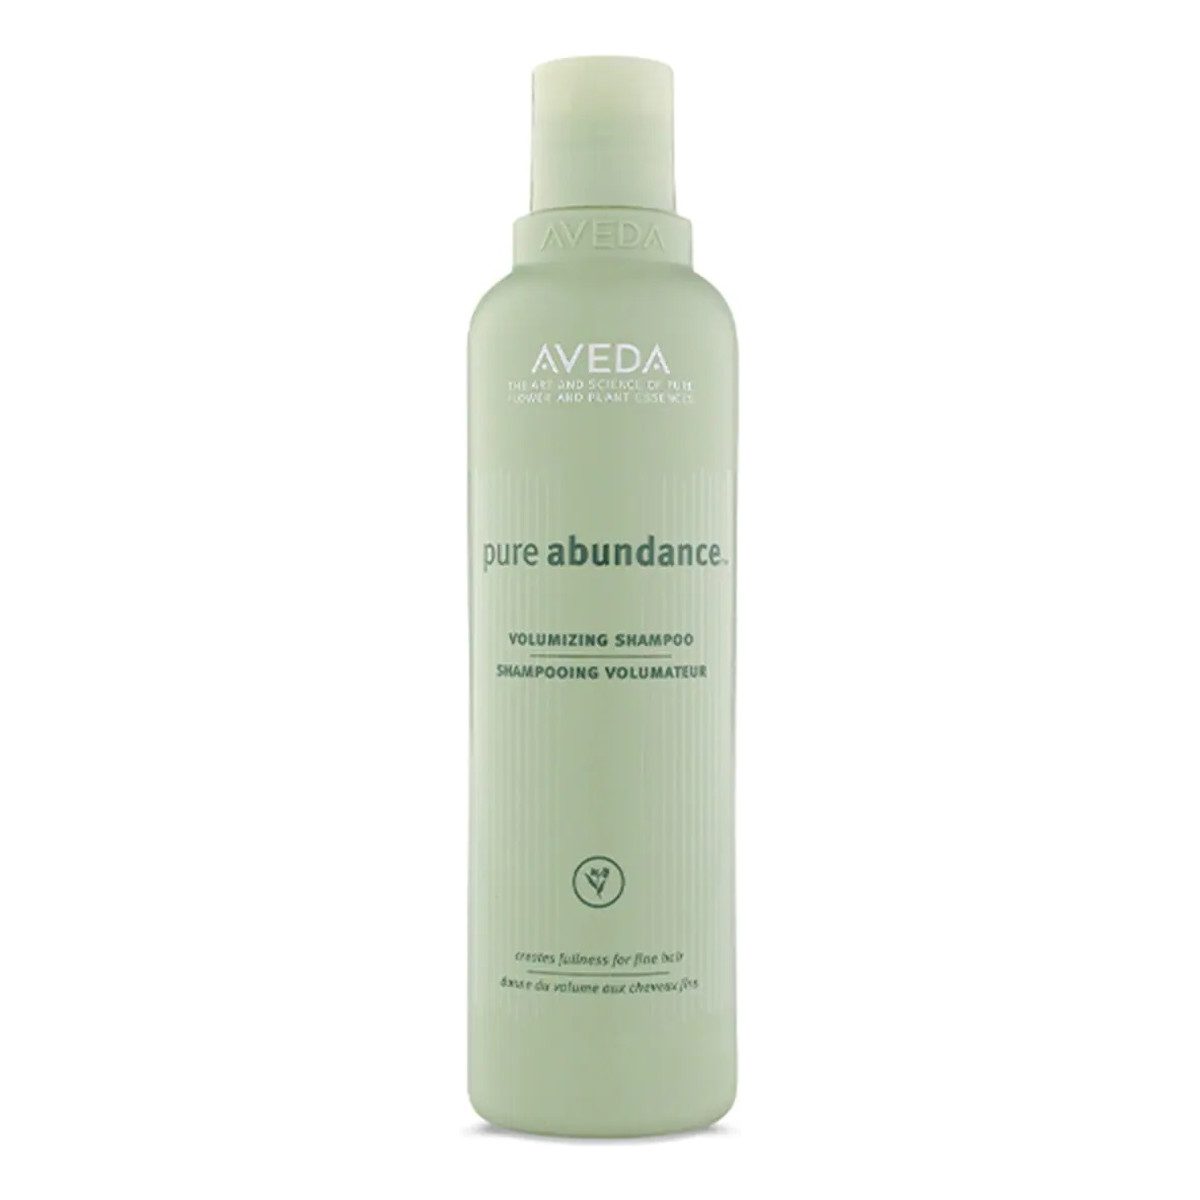 Aveda Pure abundance volumizing shampoo szampon do włosów osłabionych 250ml